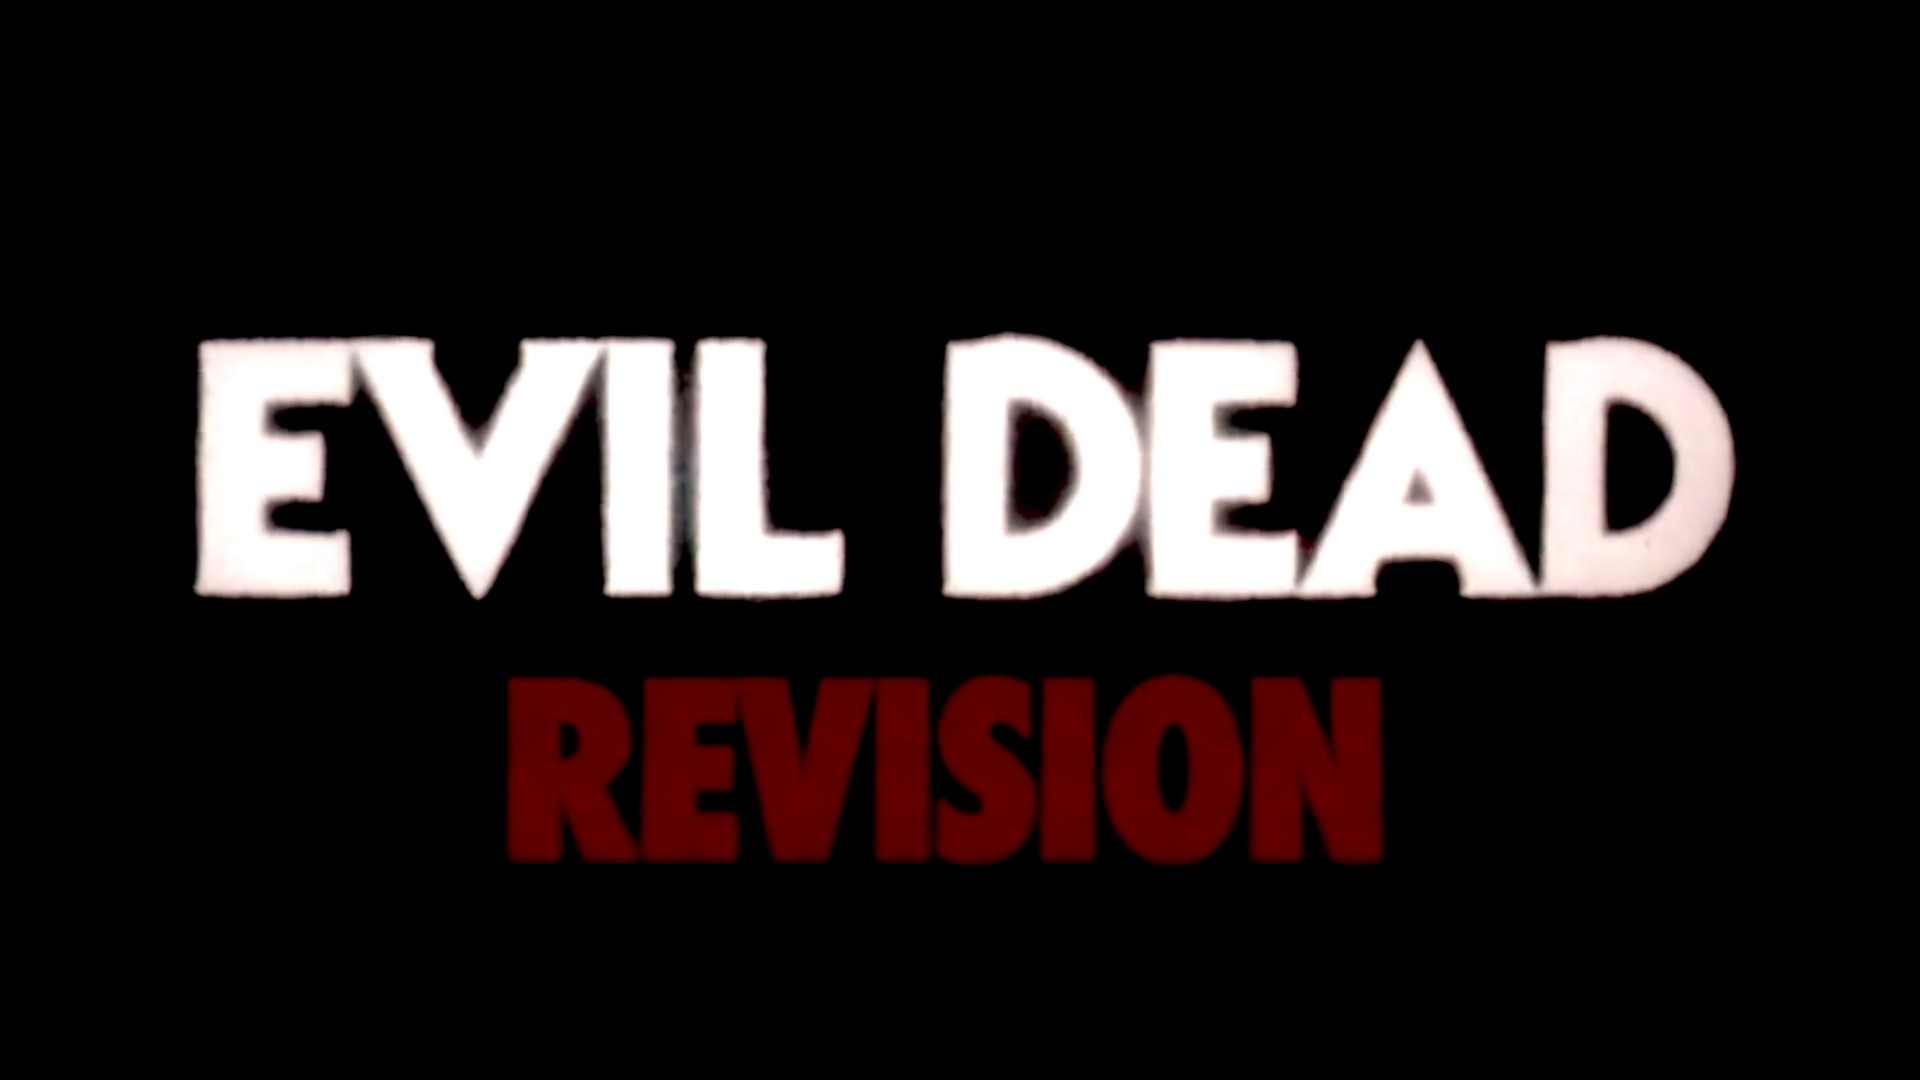 1920x1080 Screenshot: Evil Dead Revision